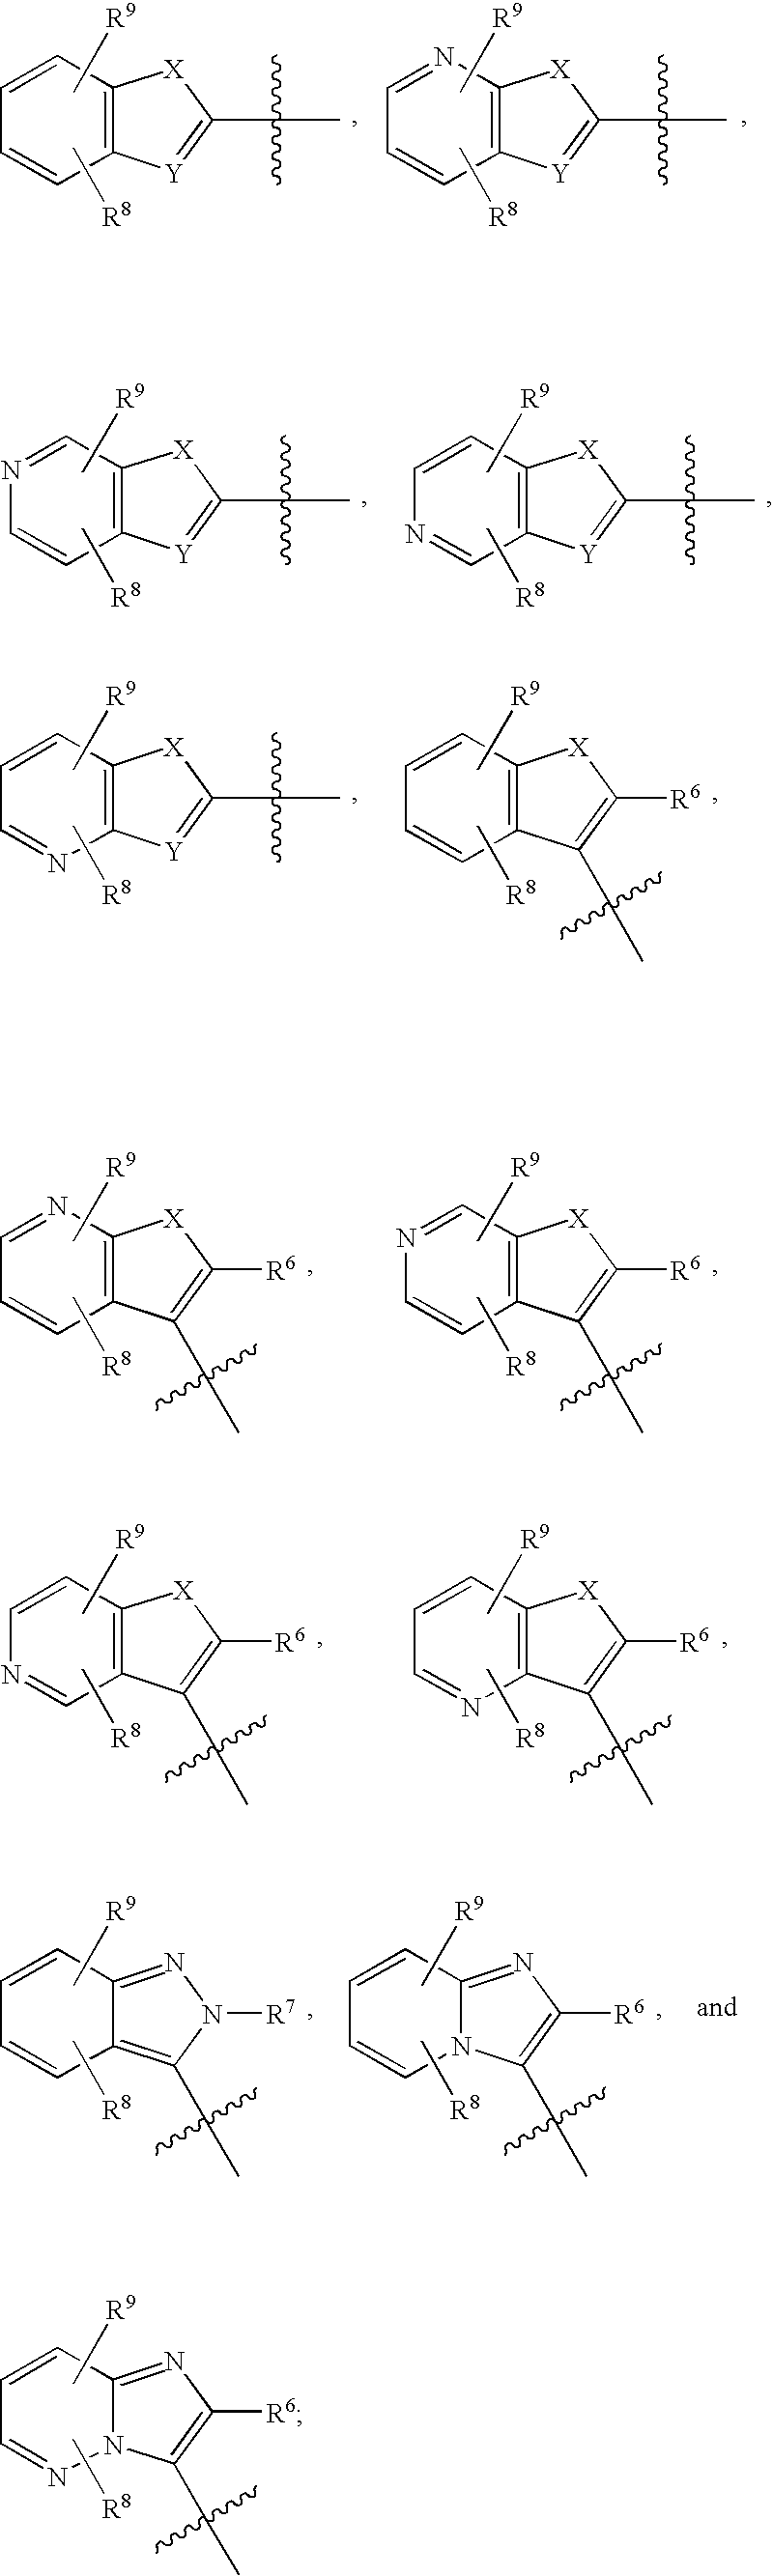 Imidazopyridazine Compounds